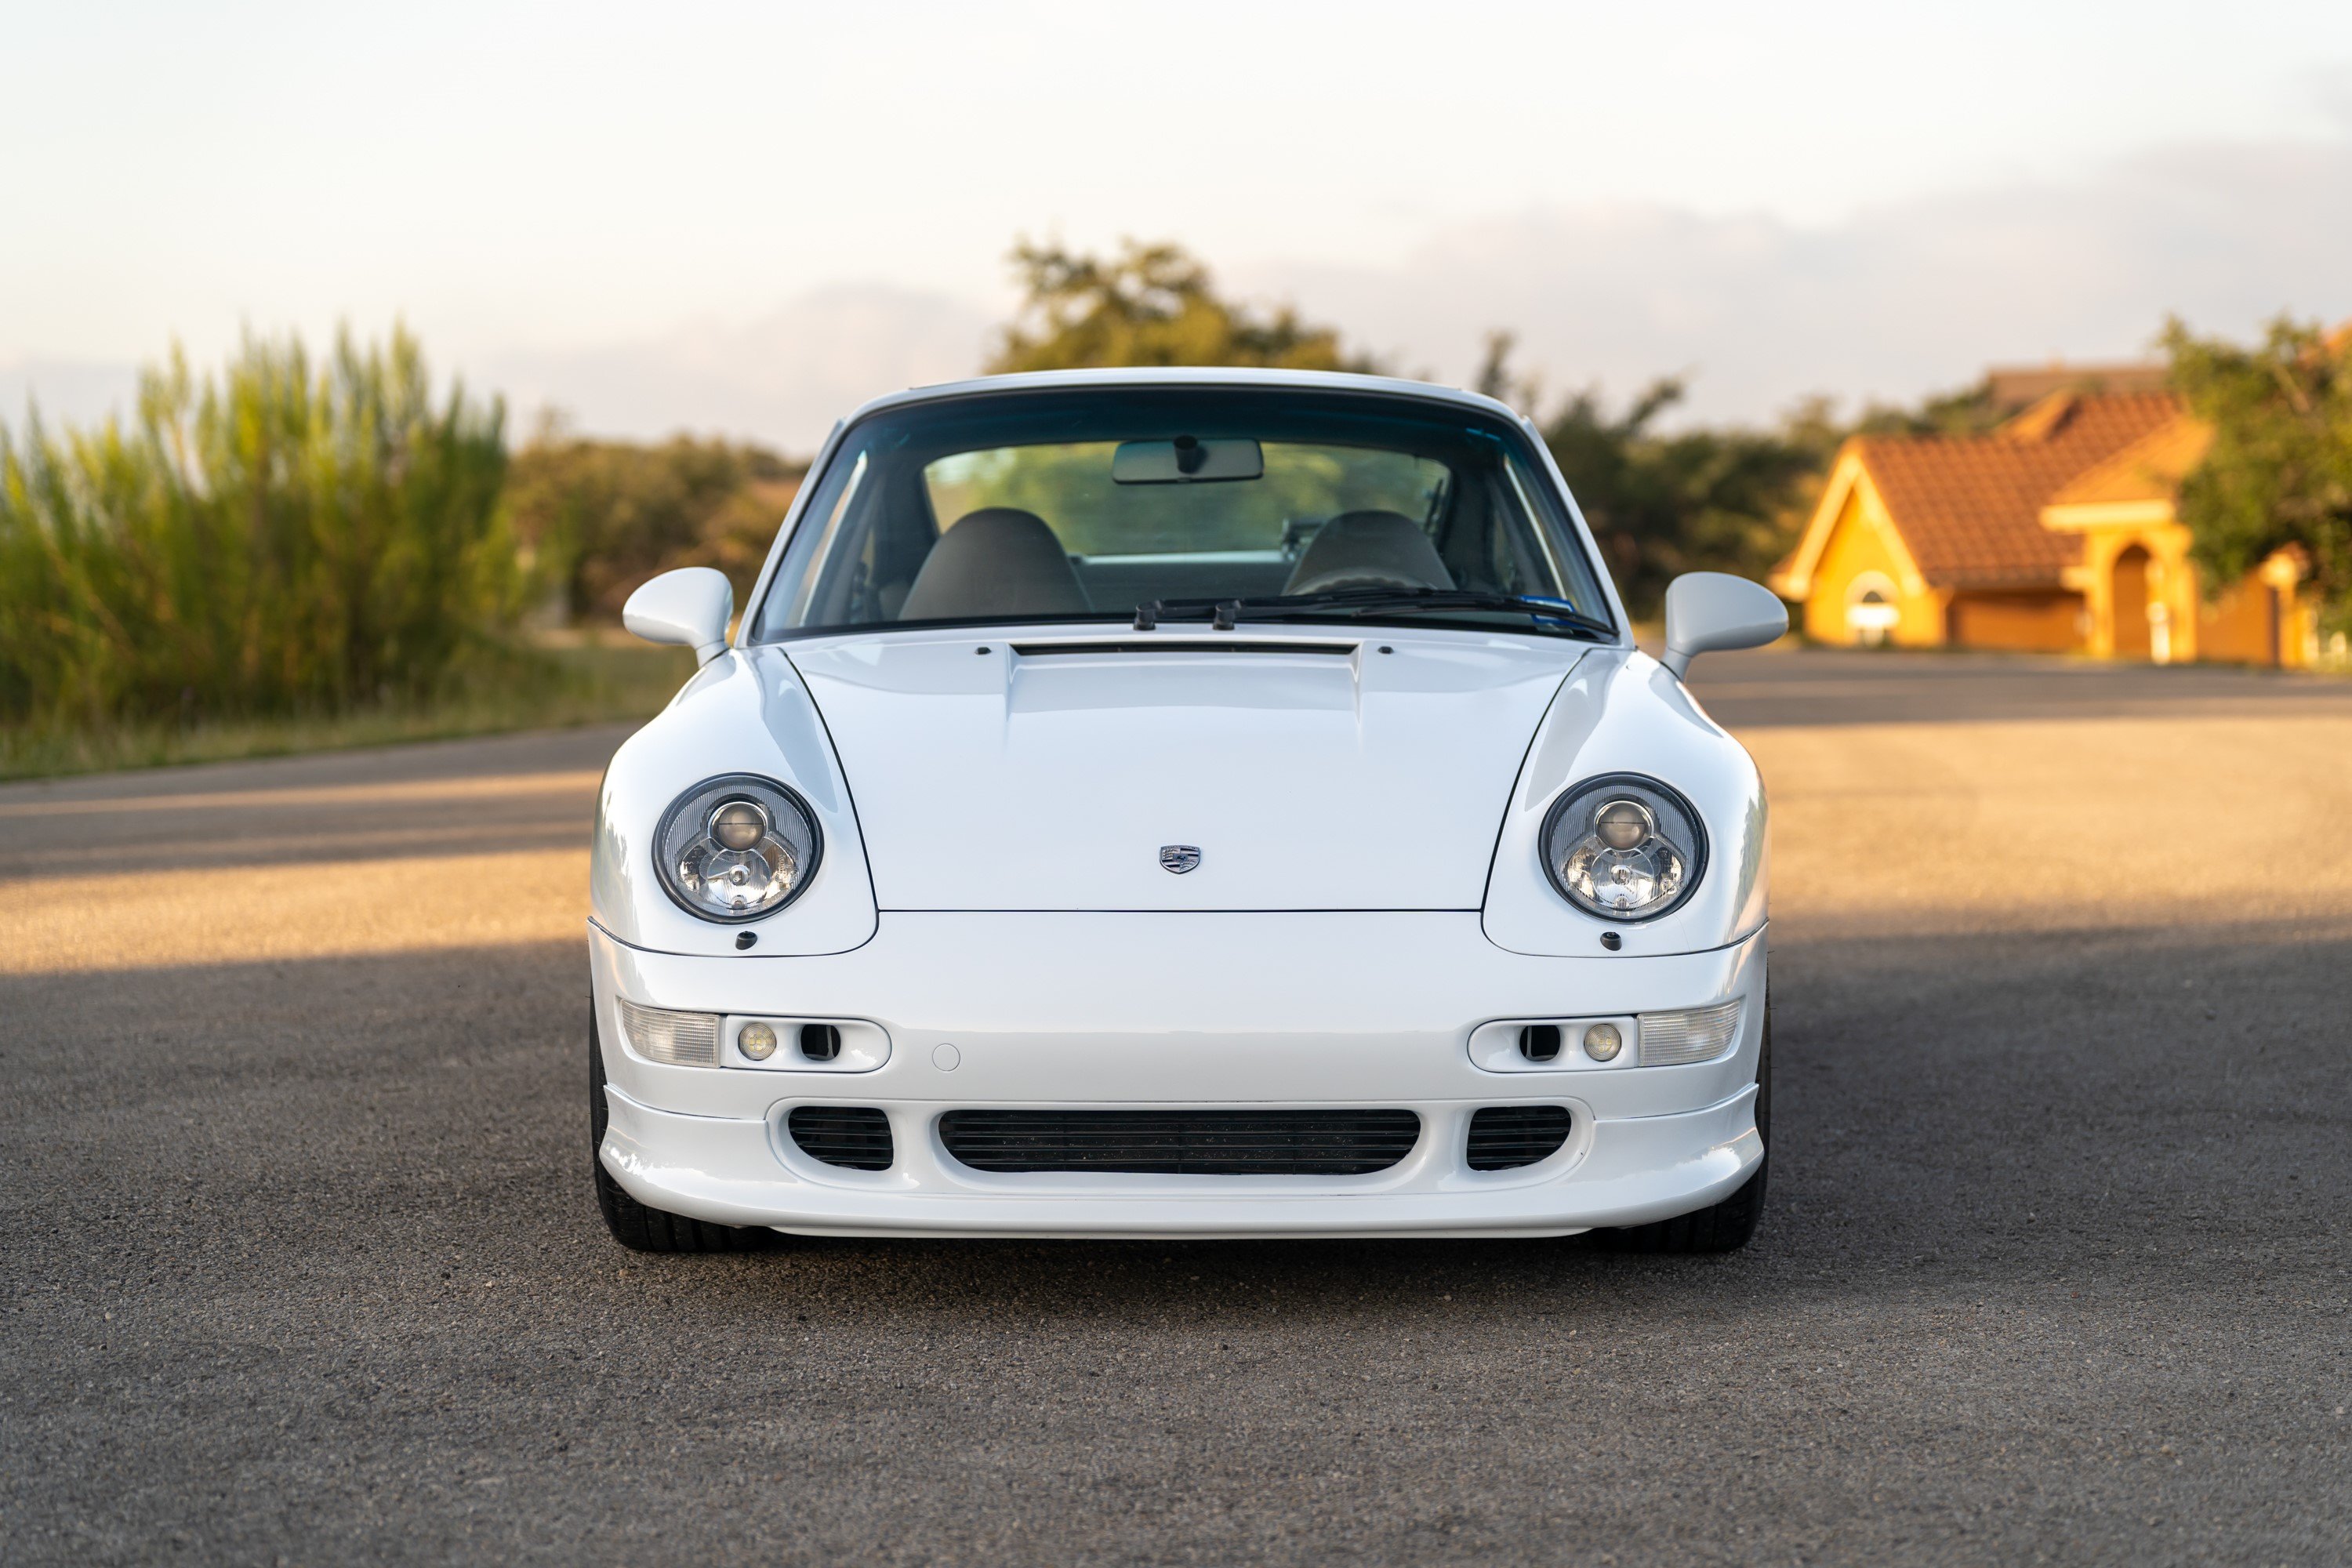 Frontend of a White Porsche 993